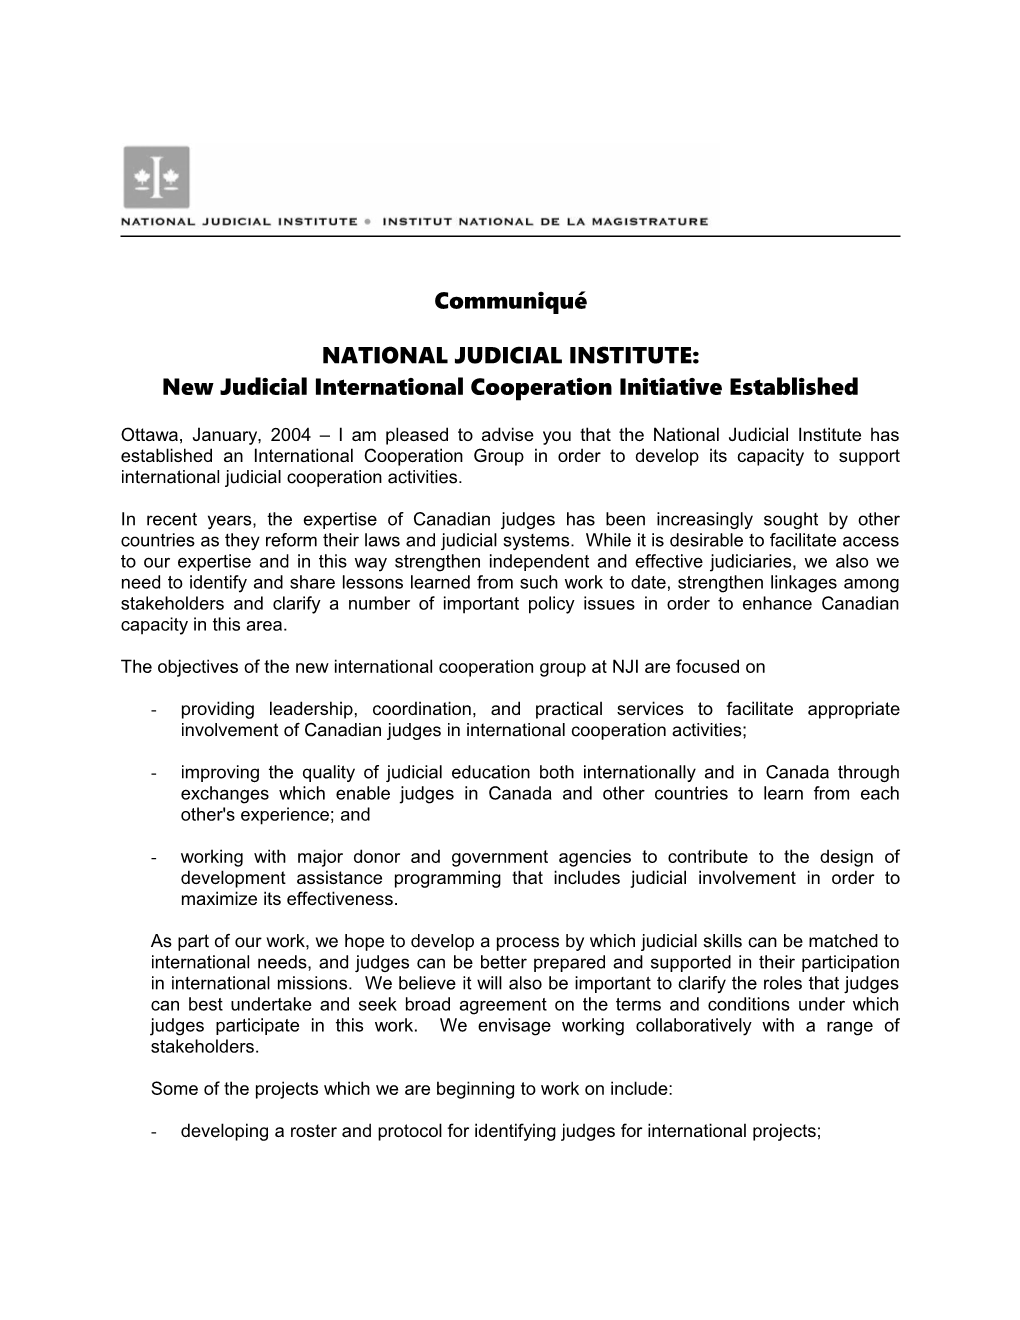 National Judicial Institute